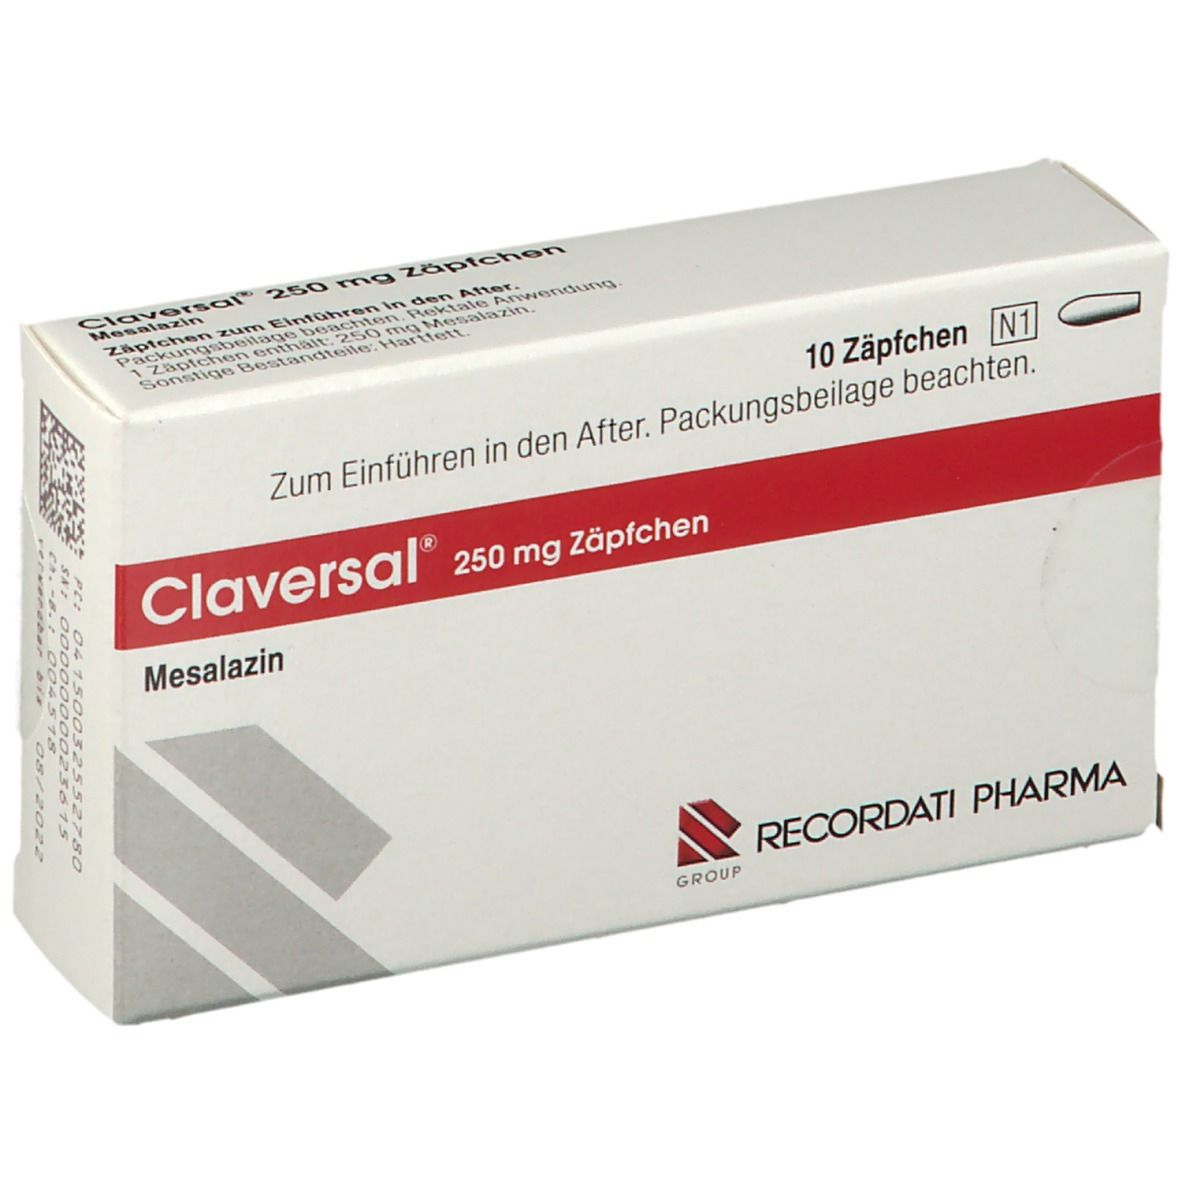 Claversal® 250 mg Zäpfchen